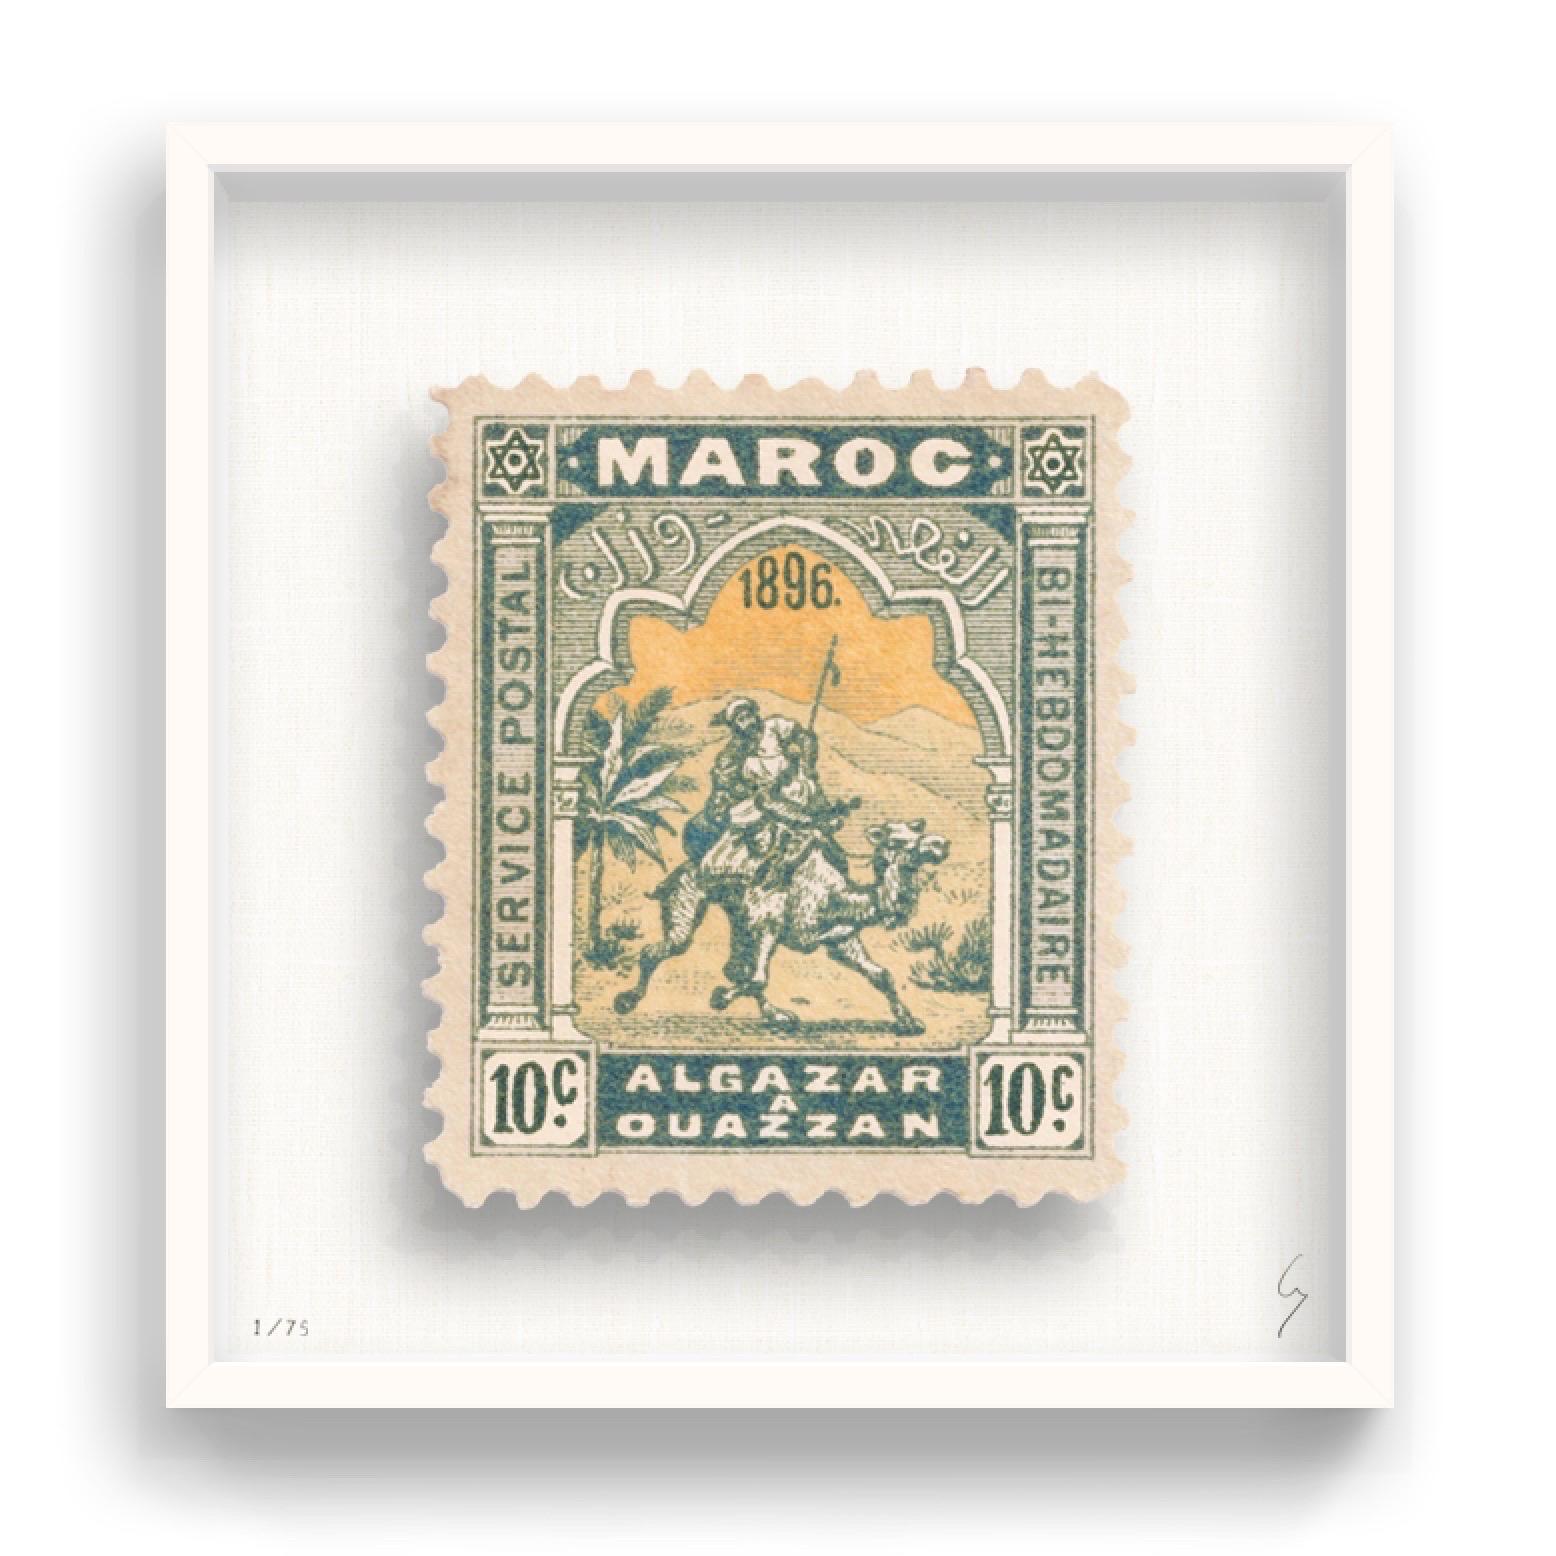 Guy Gee, Maroc (moyen)

Impression gravée à la main sur carte G.F Smith 350 g/m².
53 x 56cm (20 4/5 x 22 2/5 in)
Cadre inclus 
Edition de 75 

Chaque œuvre de Guy a été réimaginée numériquement à partir d'un timbre-poste original. Découpée et finie